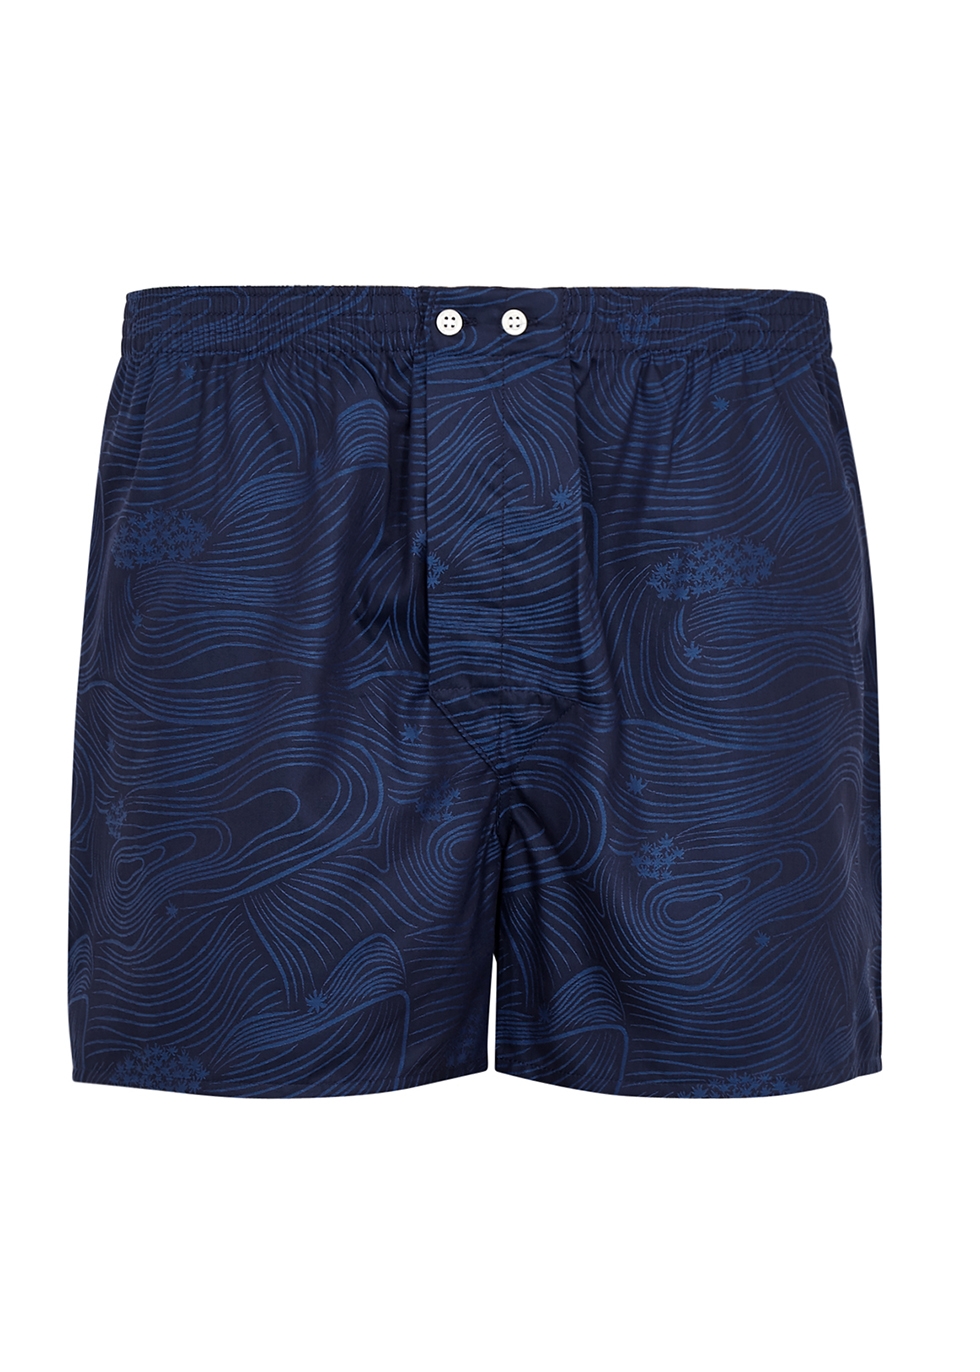 Paris 22 blue printed cotton boxer shorts